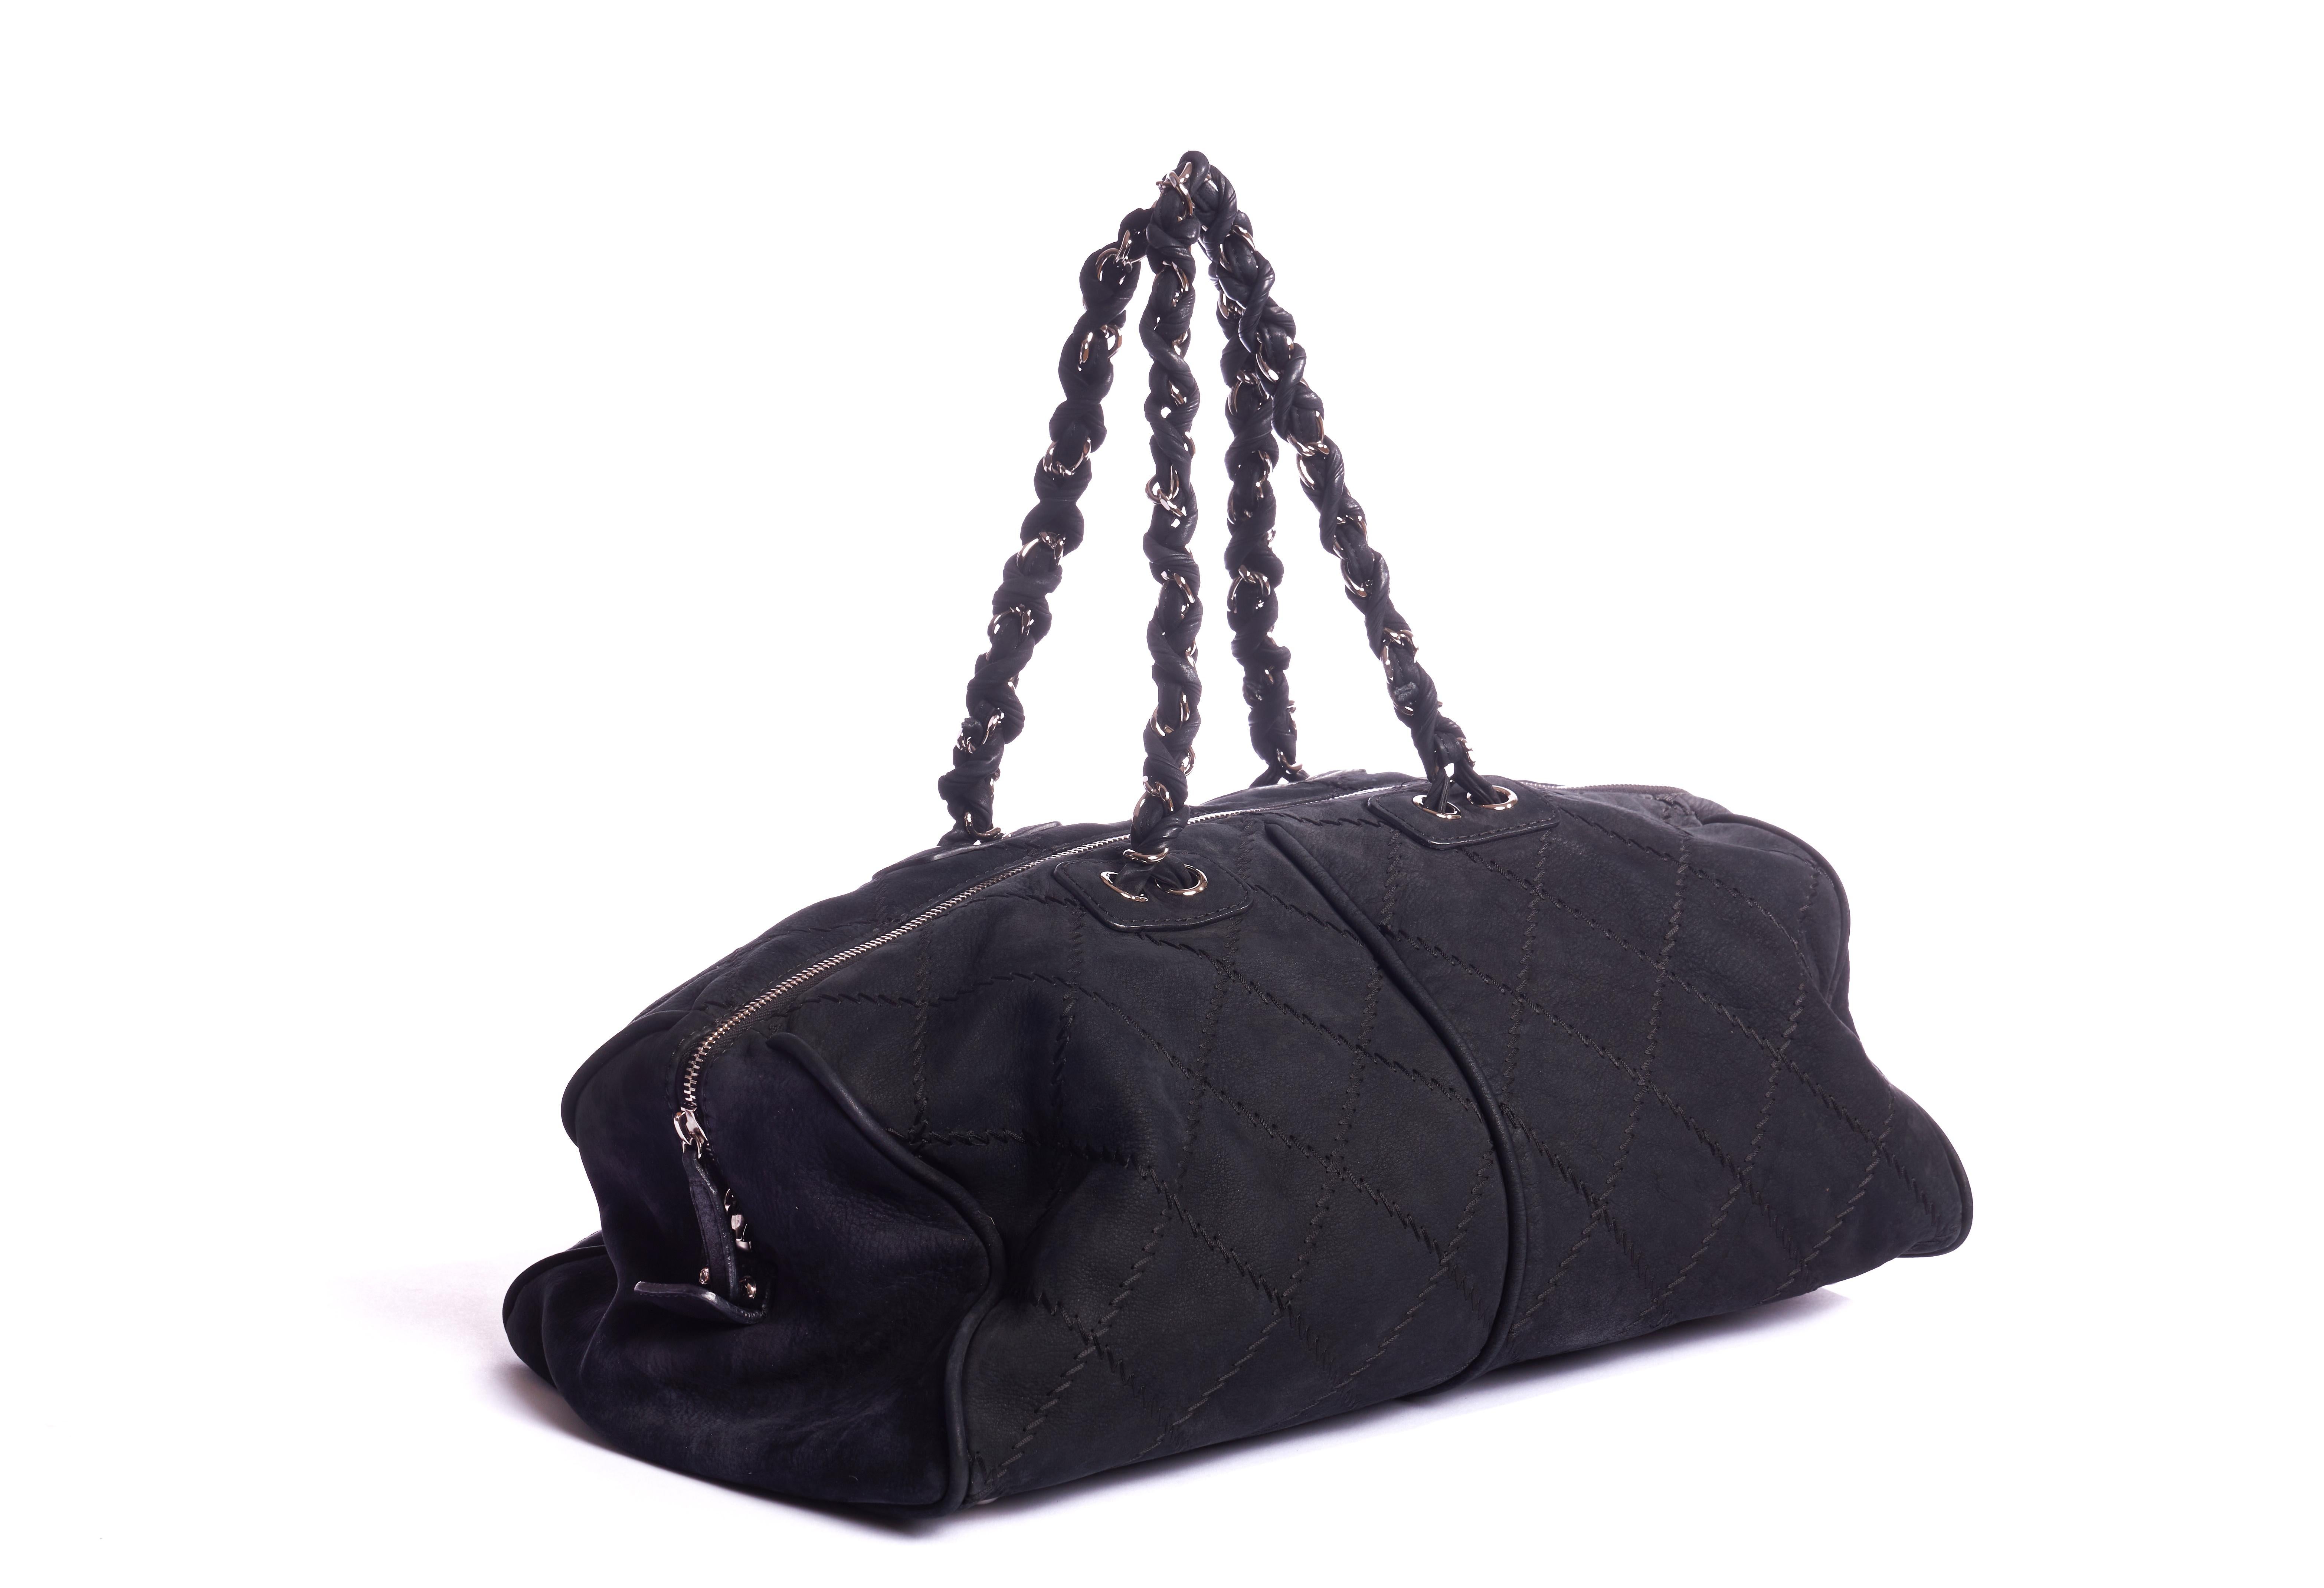 Chanel large black suede gym bag/weekender with gold tone hardware. Shoulder drop 8.5